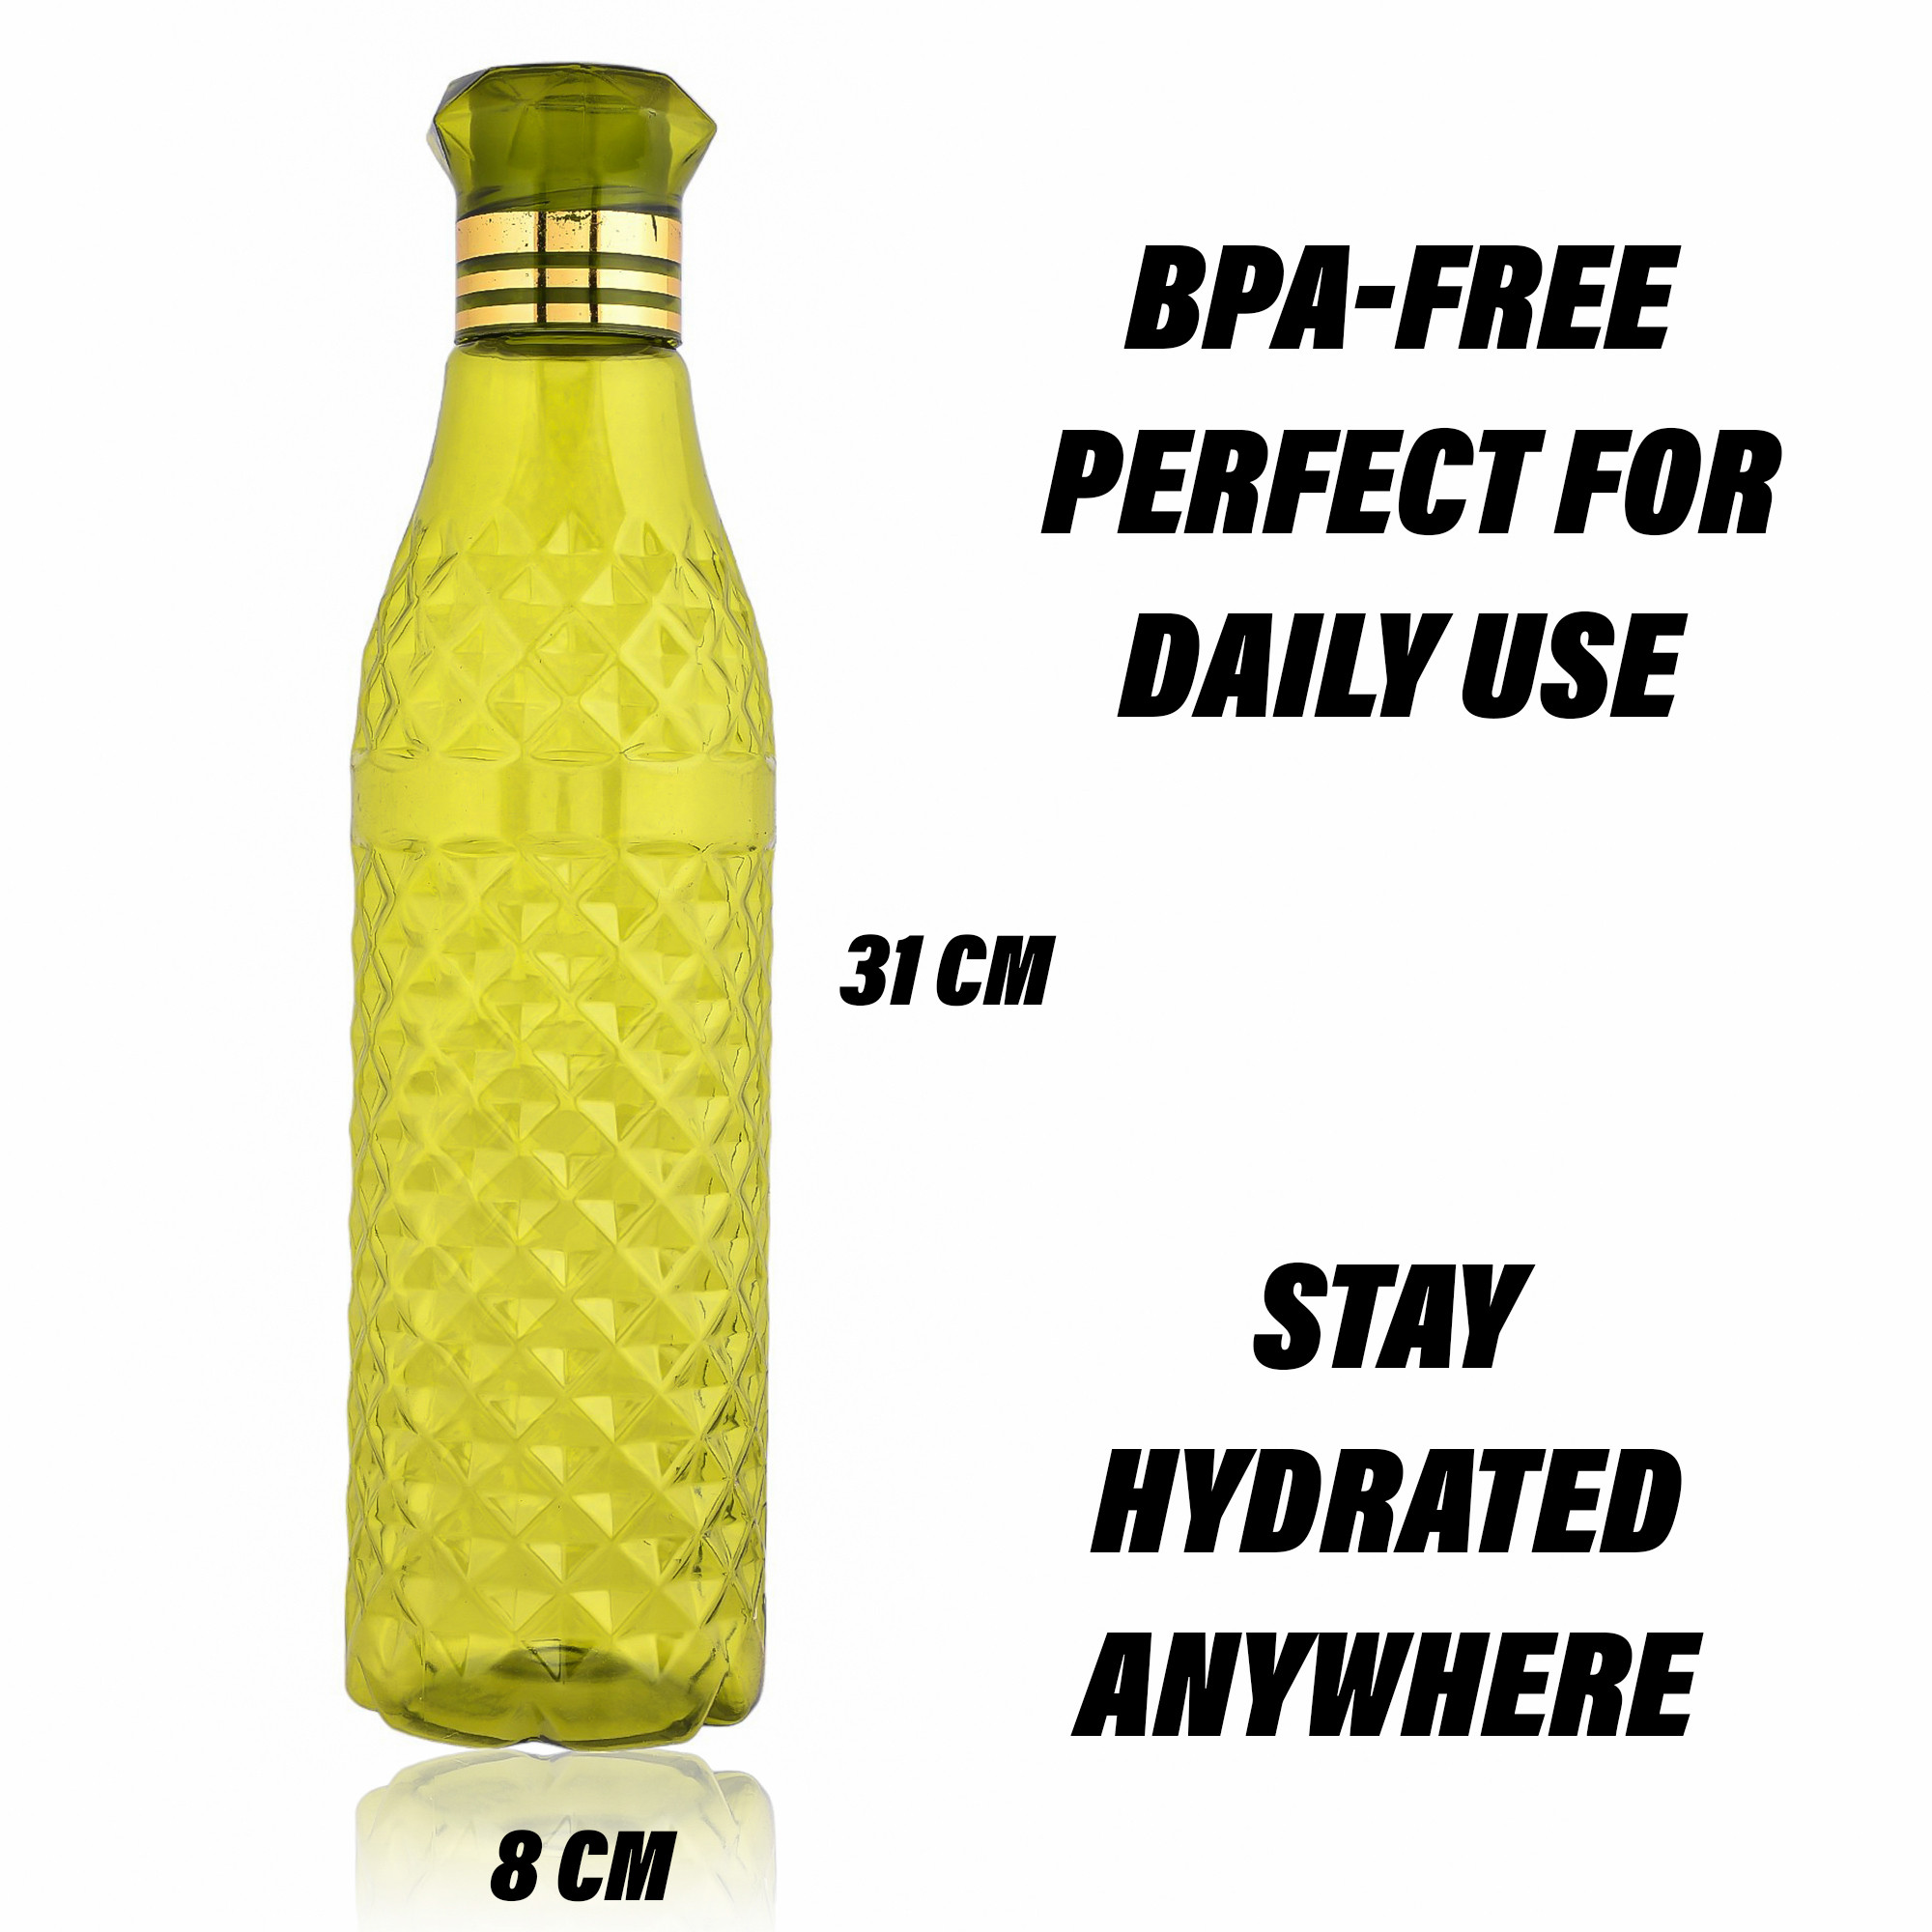 Kuber Industries Water Bottle | Plastic Water Bottle for Fridge | Water Bottle for Kitchen | Ideal for Restaurant | Water Bottle for Refrigerator | Crystal Bingo Bottle | 1 LTR | Pack of 12 | Multi